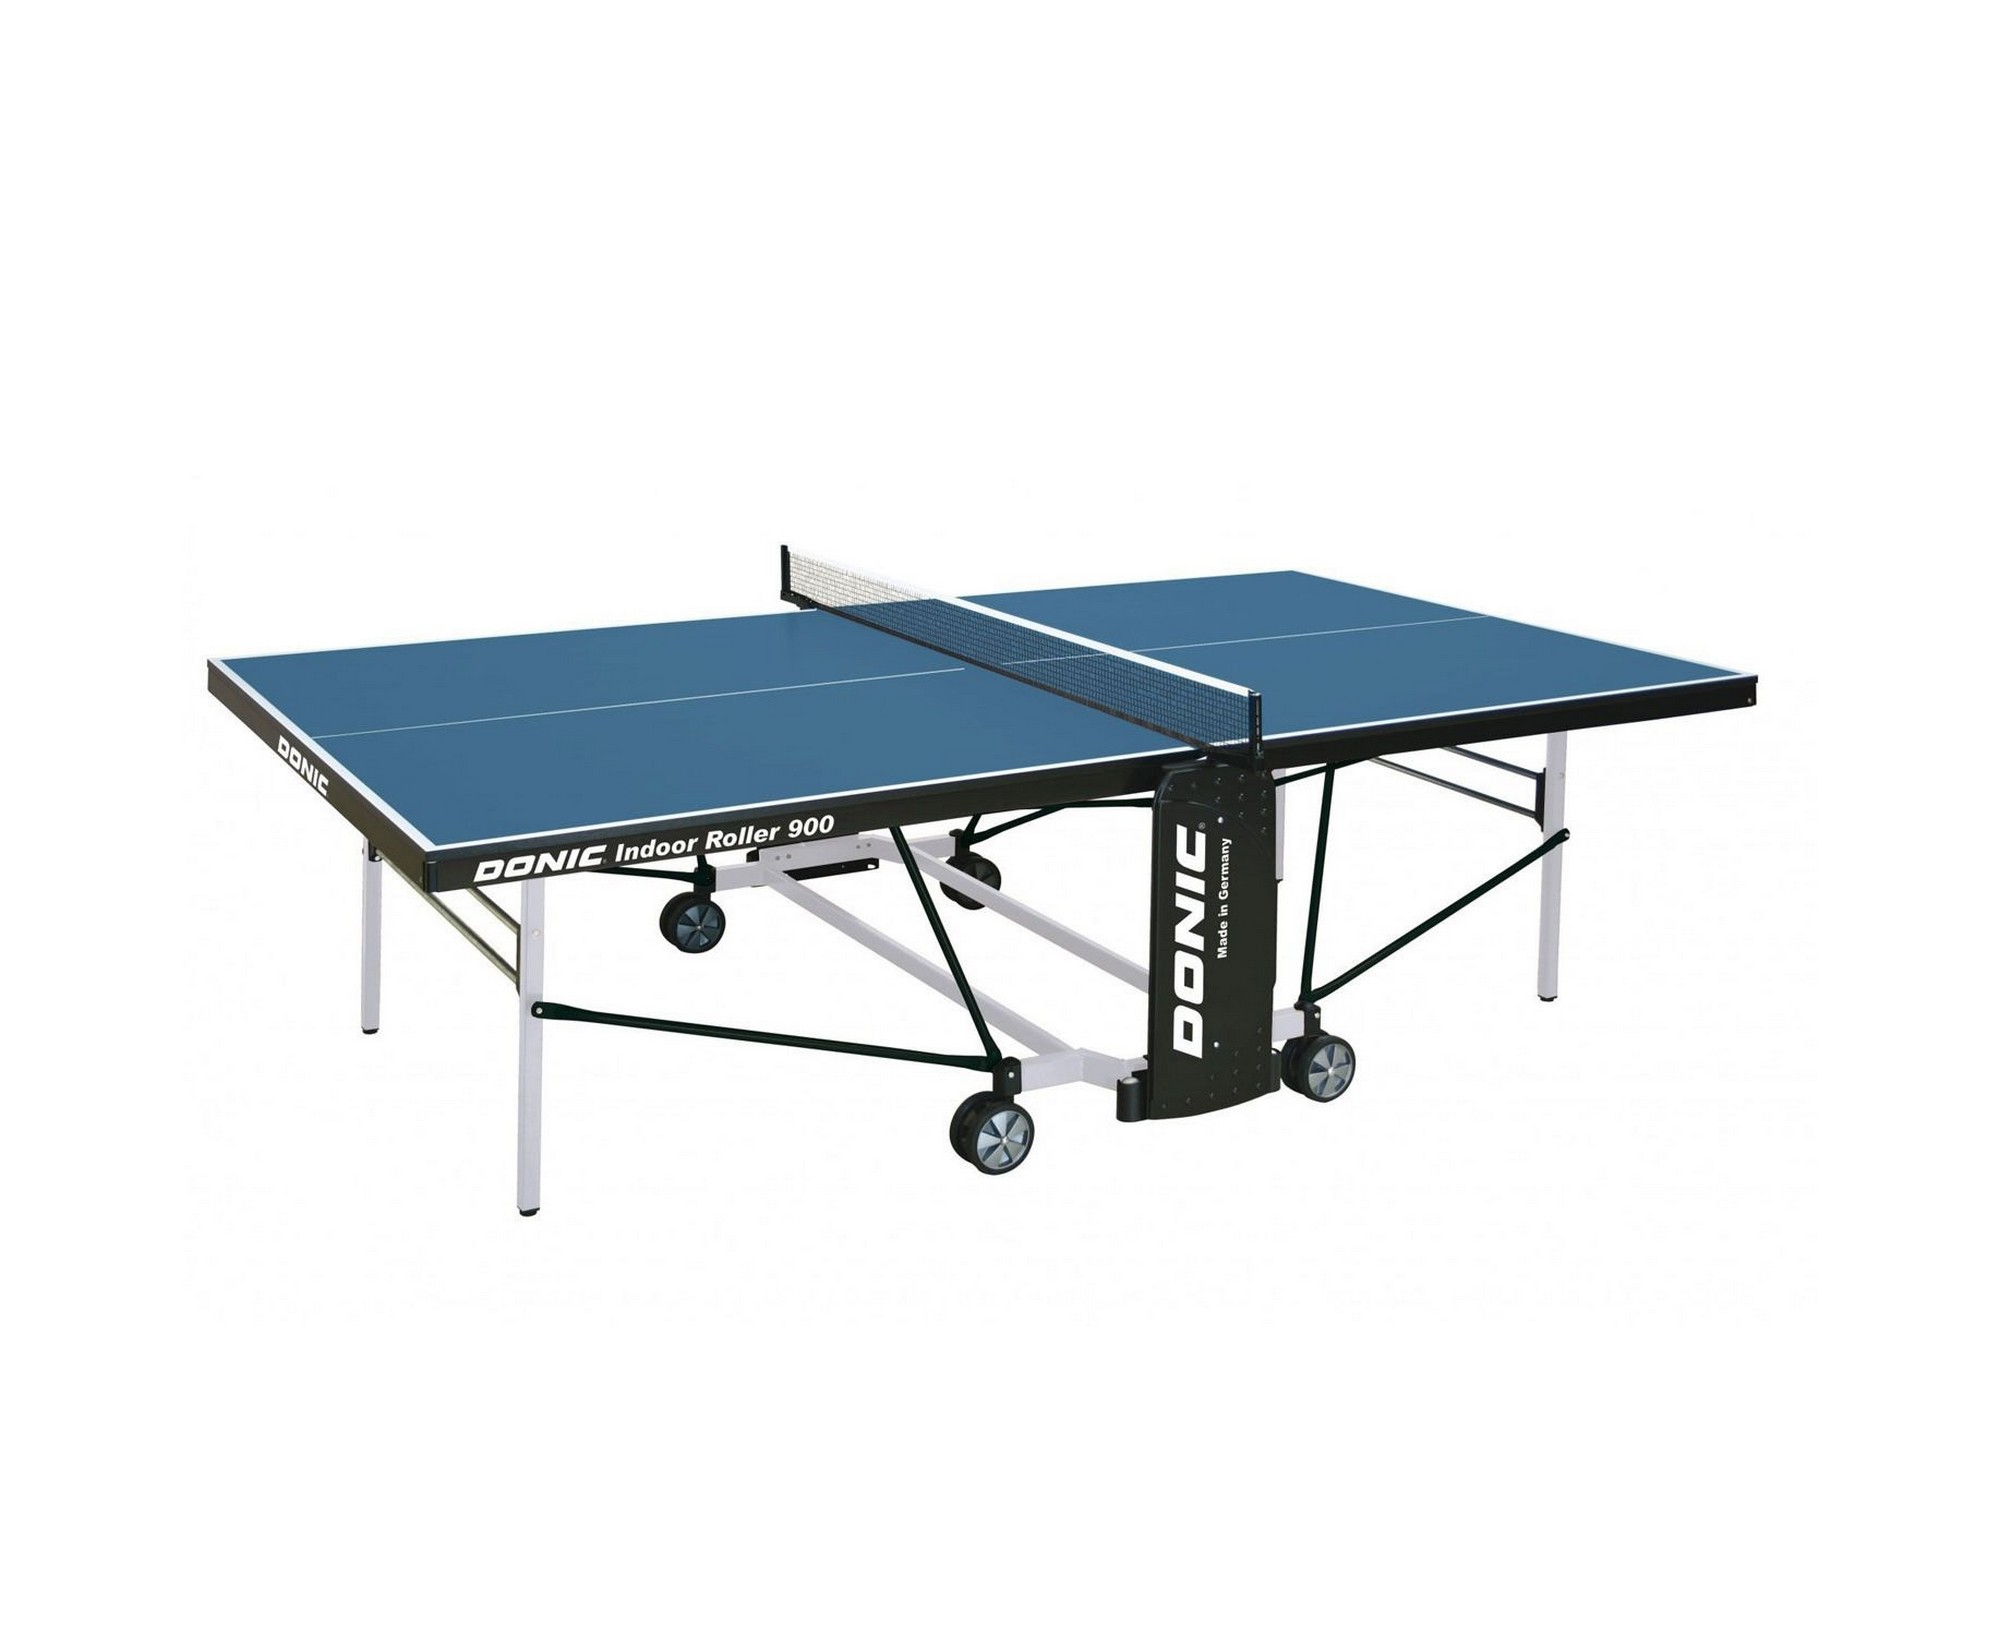 Теннисный стол Donic Indoor Roller 900 230289-B синий 2000_1636